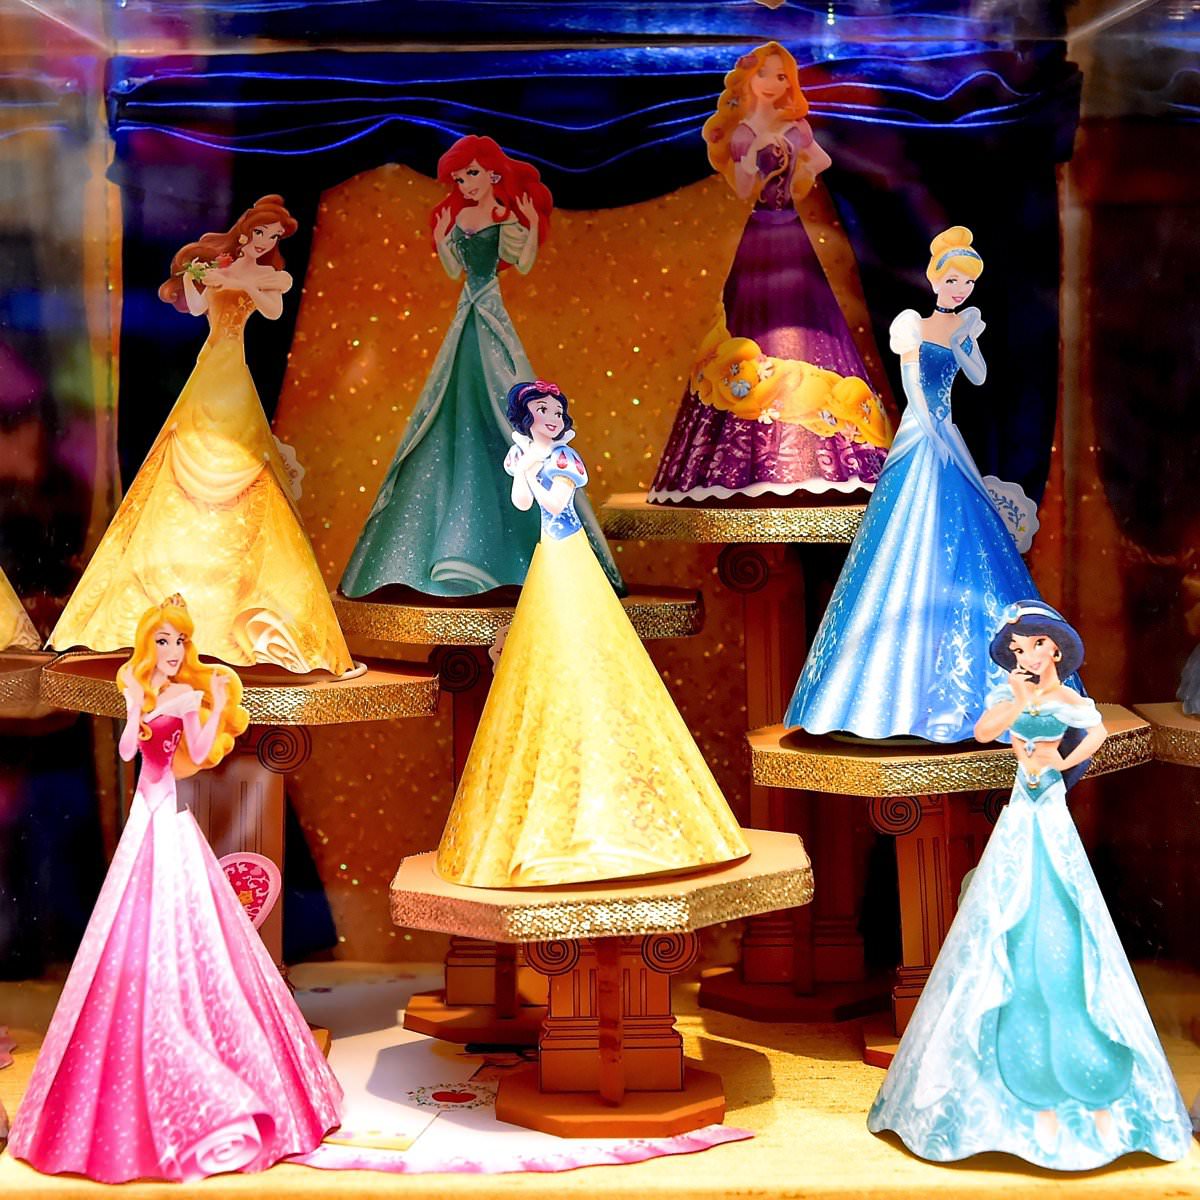 プリンセスたちの立ち姿が素敵 ディズニープリンセスドレスメモ